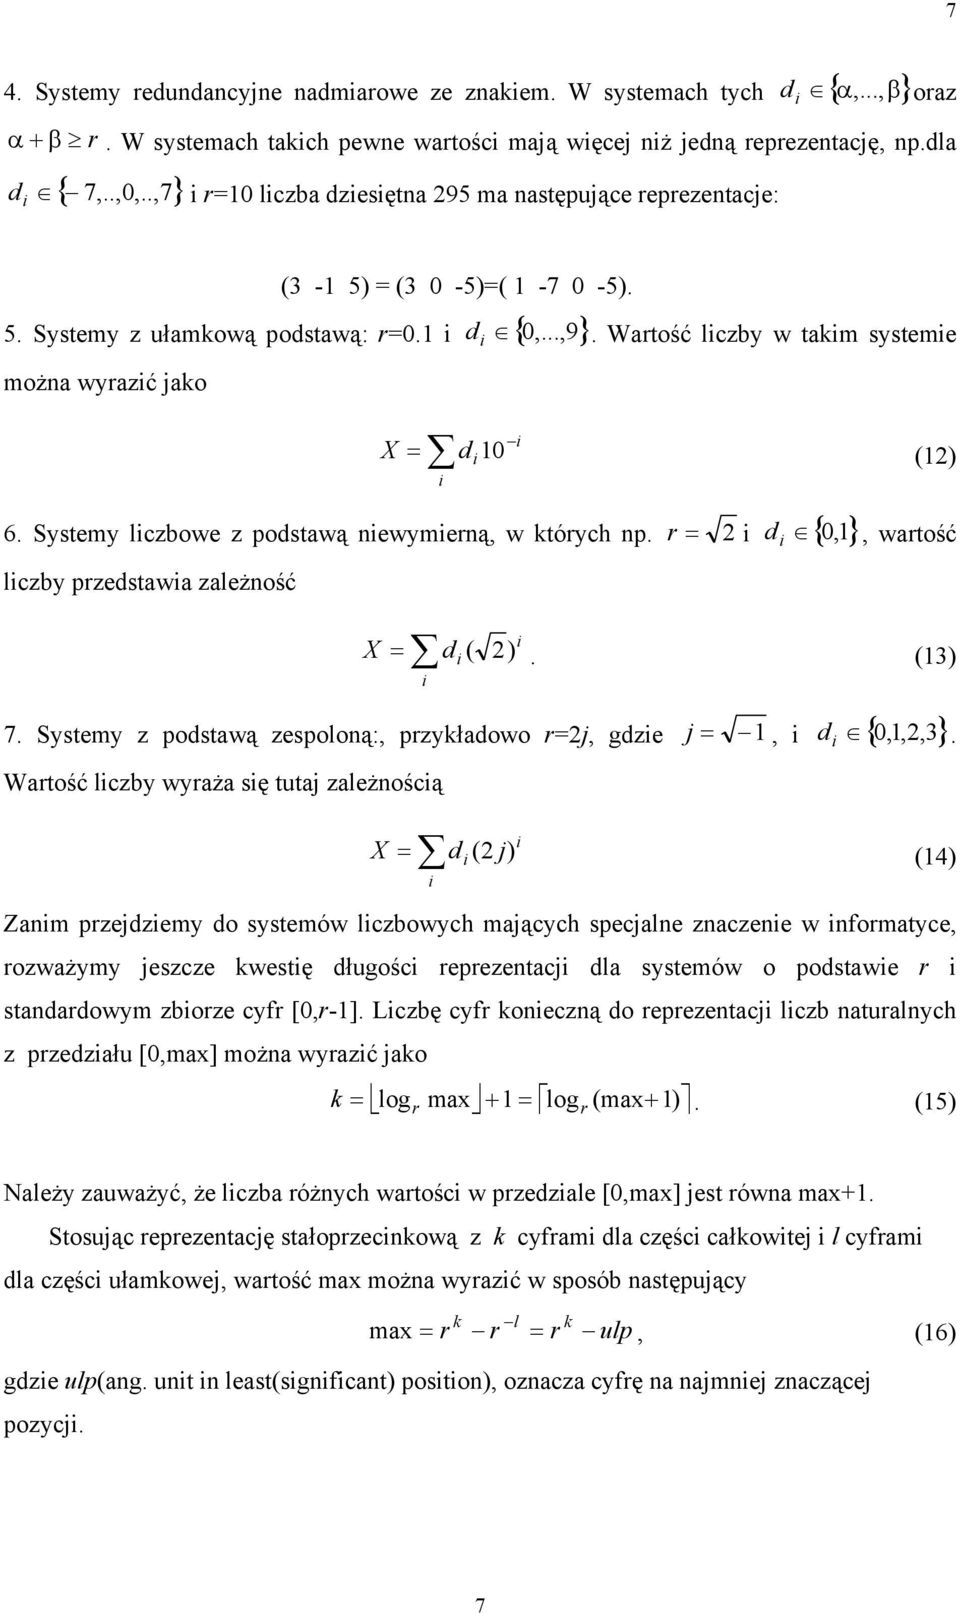 Systemy lczbowe z podstawą ewymerą, w których p. r =,, wartość lczby przedstawa zależość d { } = d ( ). (3) 7. Systemy z podstawą zespoloą:, przykładowo r=j, gdze j =,,,,3.